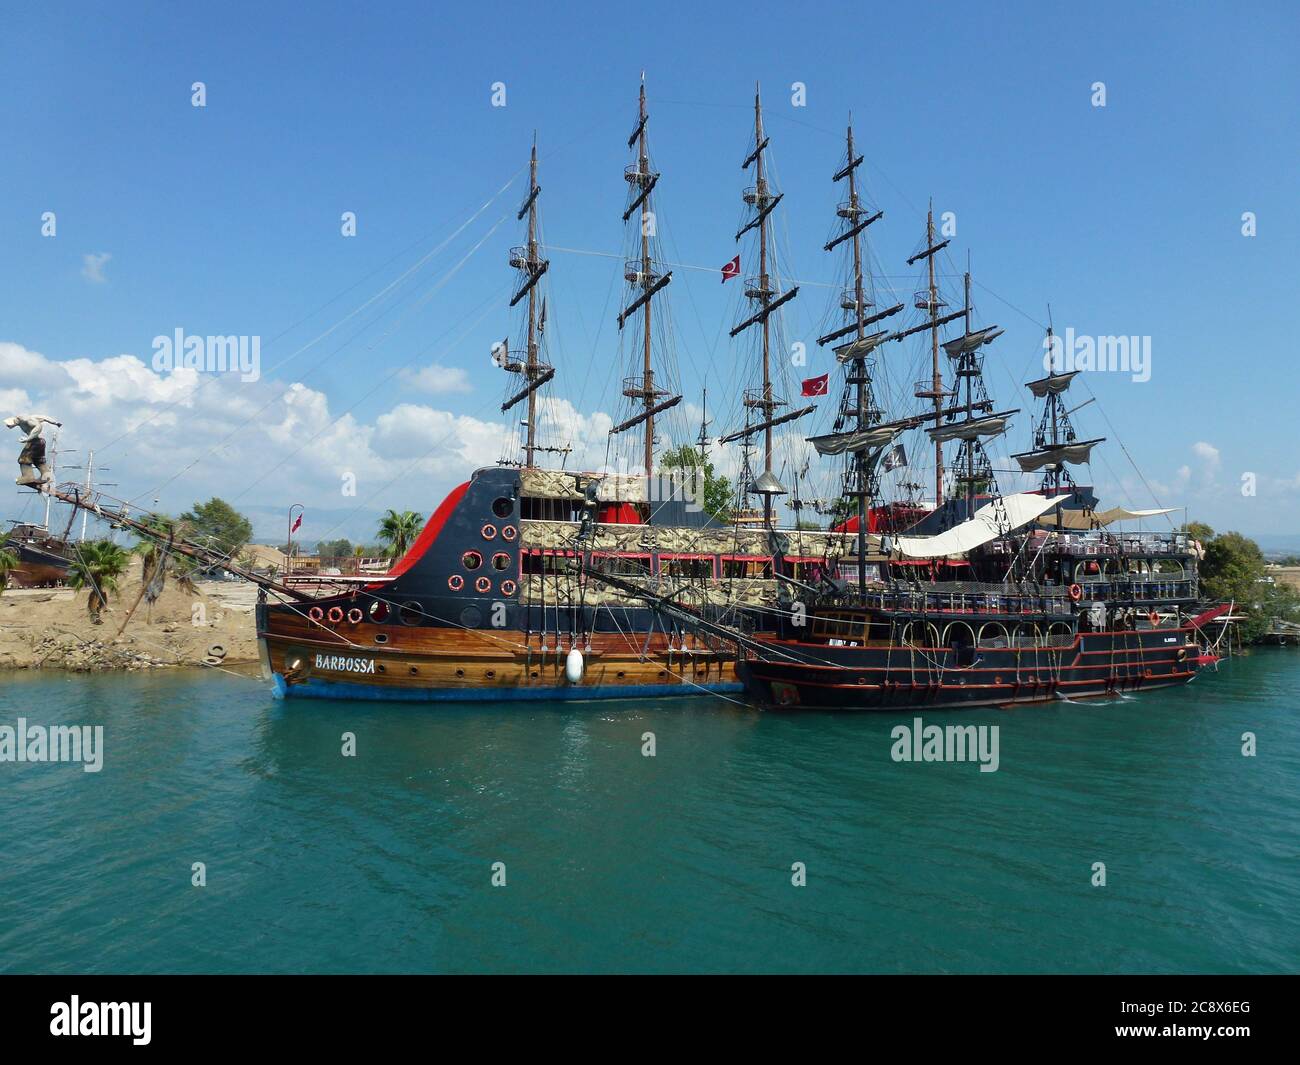 Barco turístico de Turquía Foto de stock